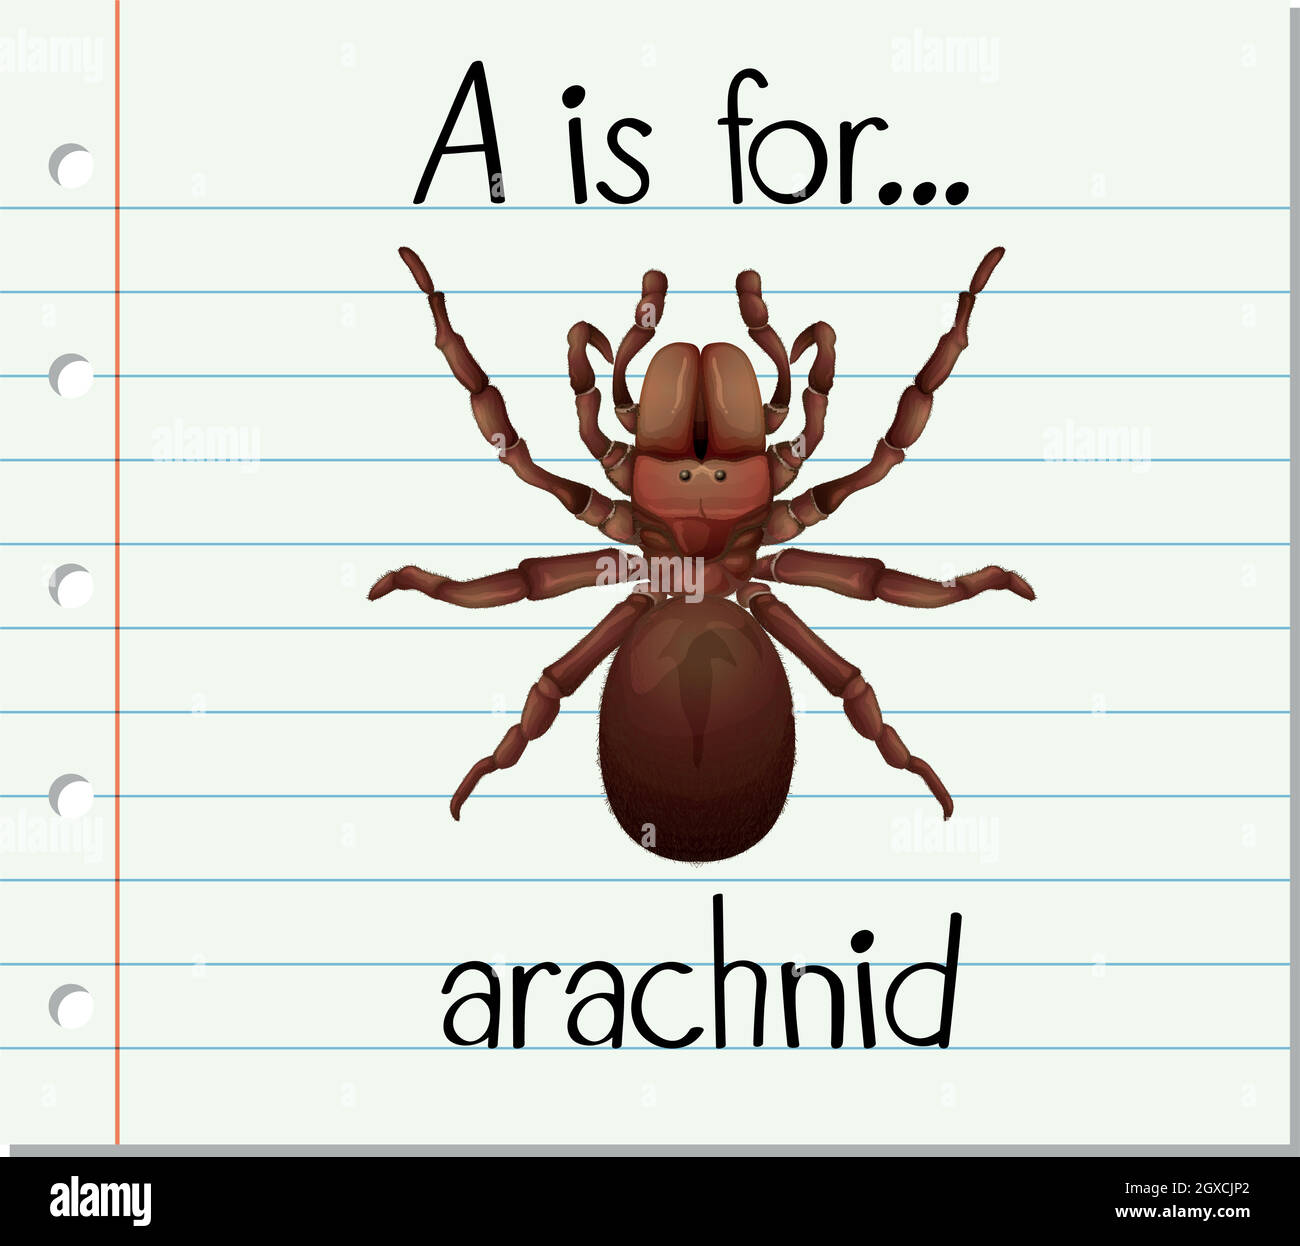 Spider Anatomy Flashcards